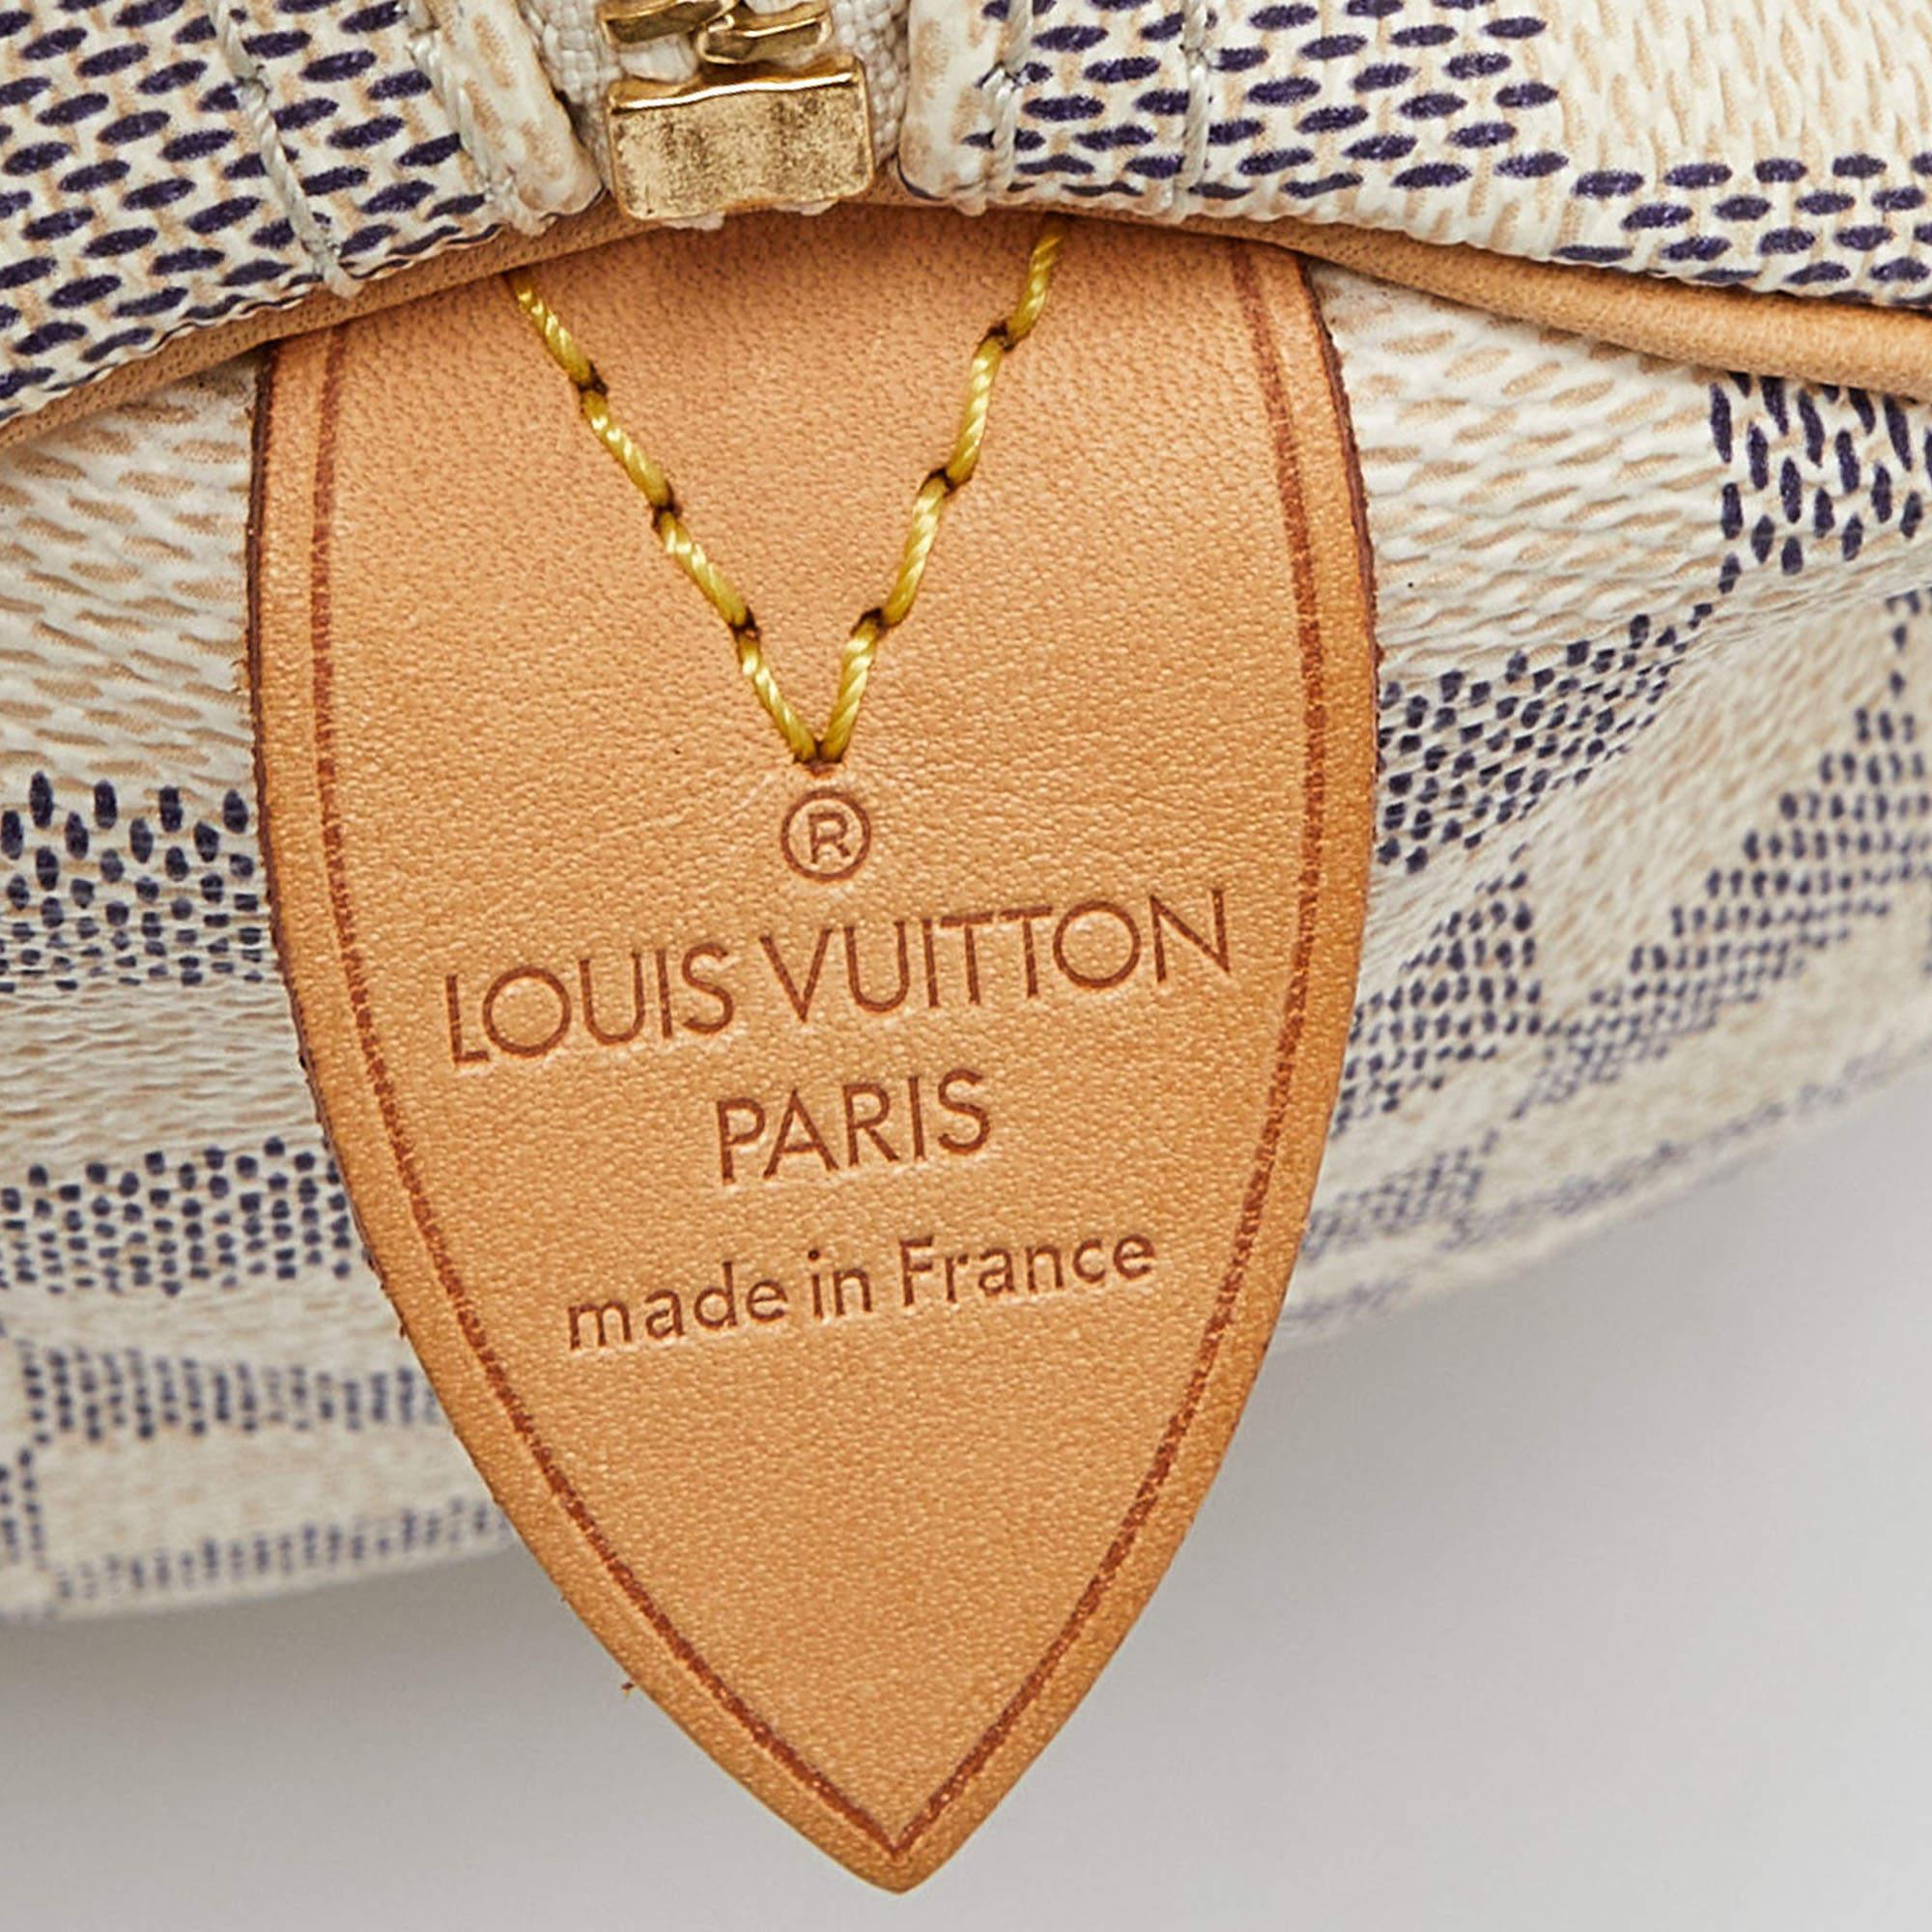 Louis Vuitton Damier Azur Canvas Speedy 25 Bag For Sale 1